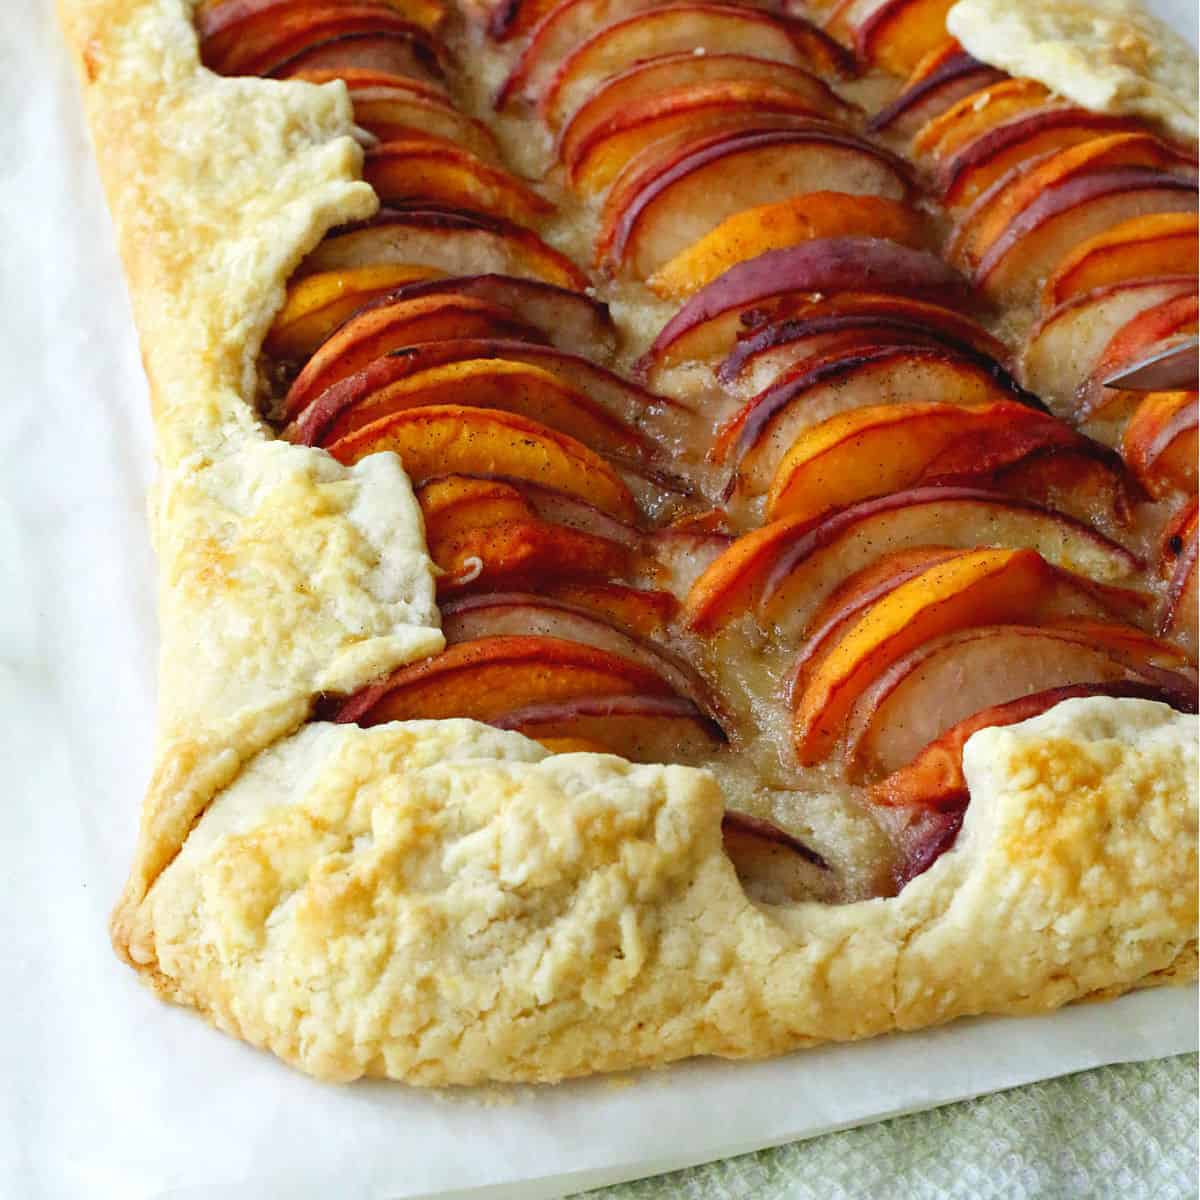 Peach Almond Tart with Vanilla Bean   One Hot Oven